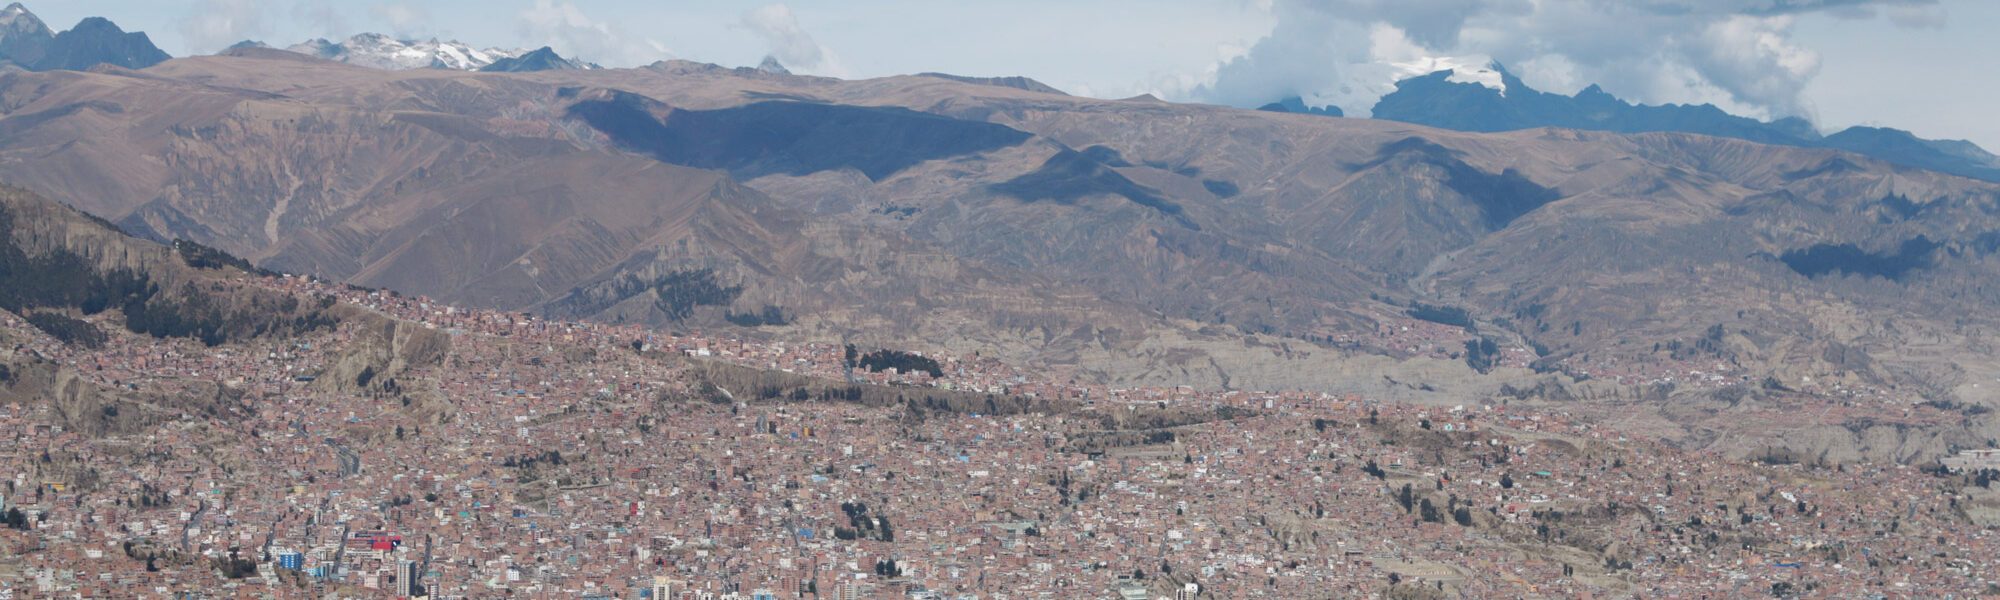 La Paz -Bolivia